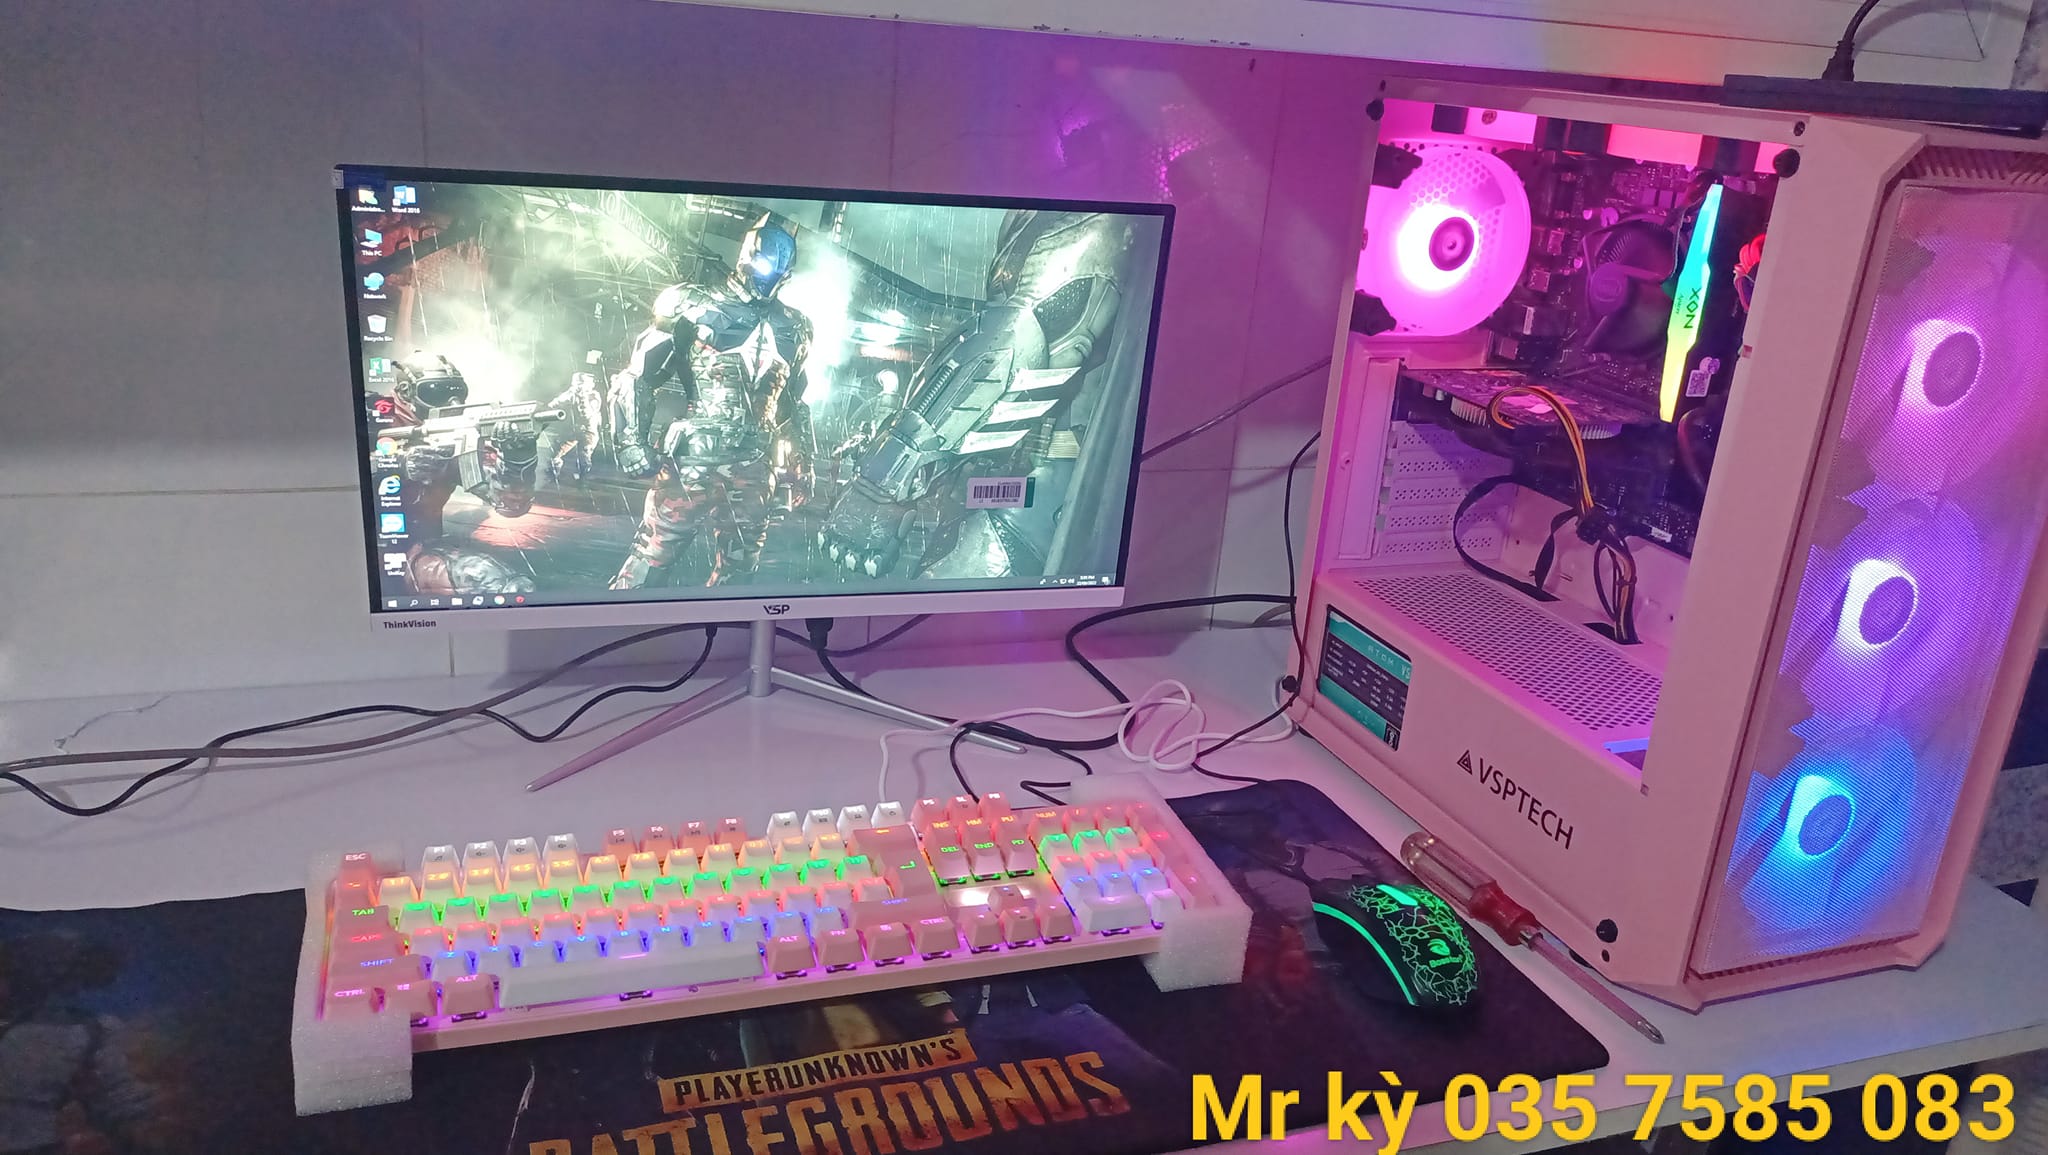 Bộ PC Gaming Led ( Hàng Mới Bảo Hành 12 Tháng ) H510 SK 1200/ Ram 8G  - 16G Bus 3200 Led/CPU G6405 - Core  i3 10105f / SSD 240G/VGA 730 DR5 -GTX 750 DR5  - GTX 1660s 6G D6/ Màn 22in - 24in phẳng Cong full viền full HD 1920 x 1080 .